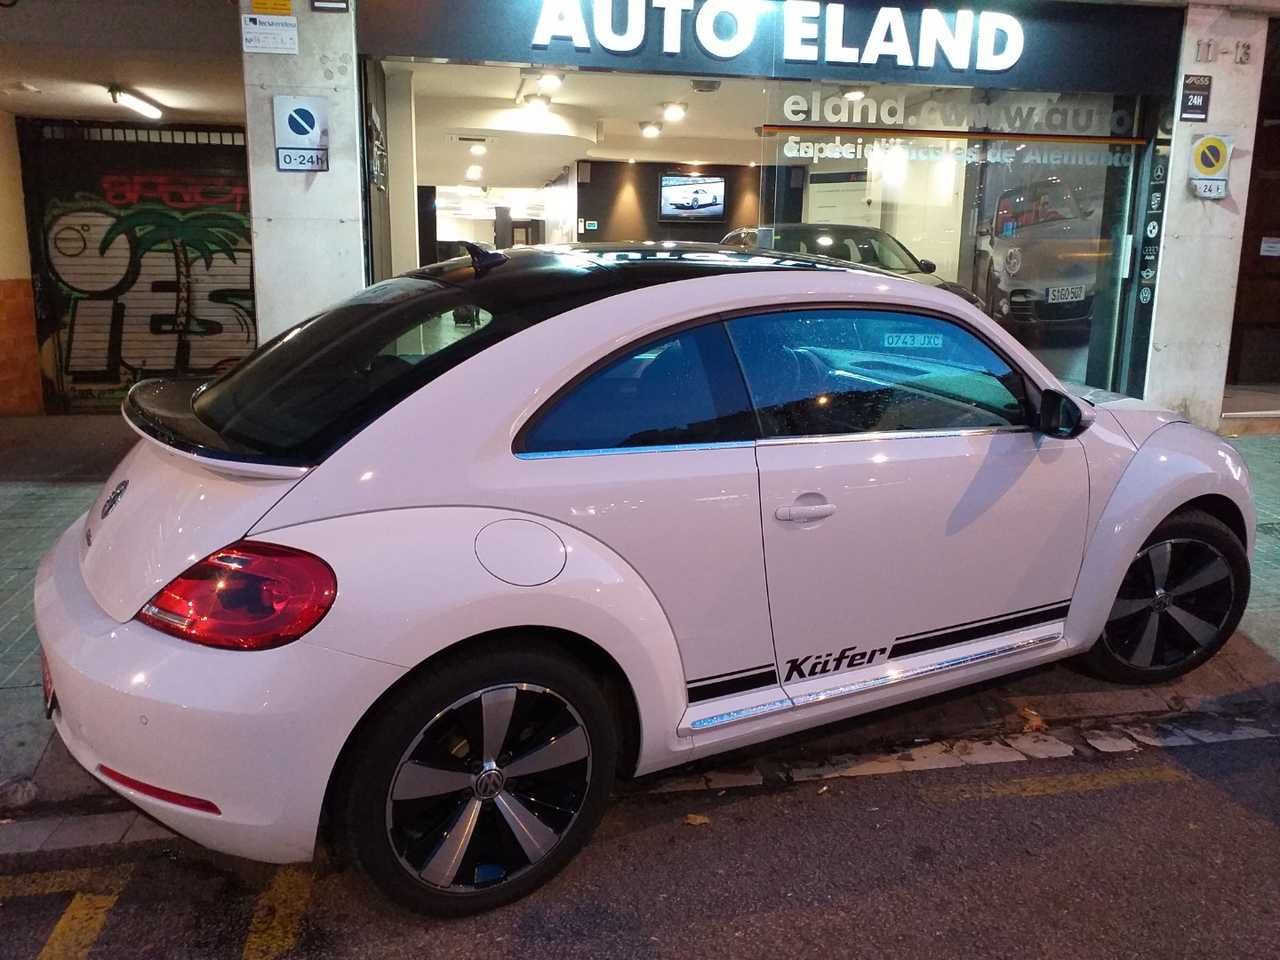 Foto Volkswagen Beetle 1